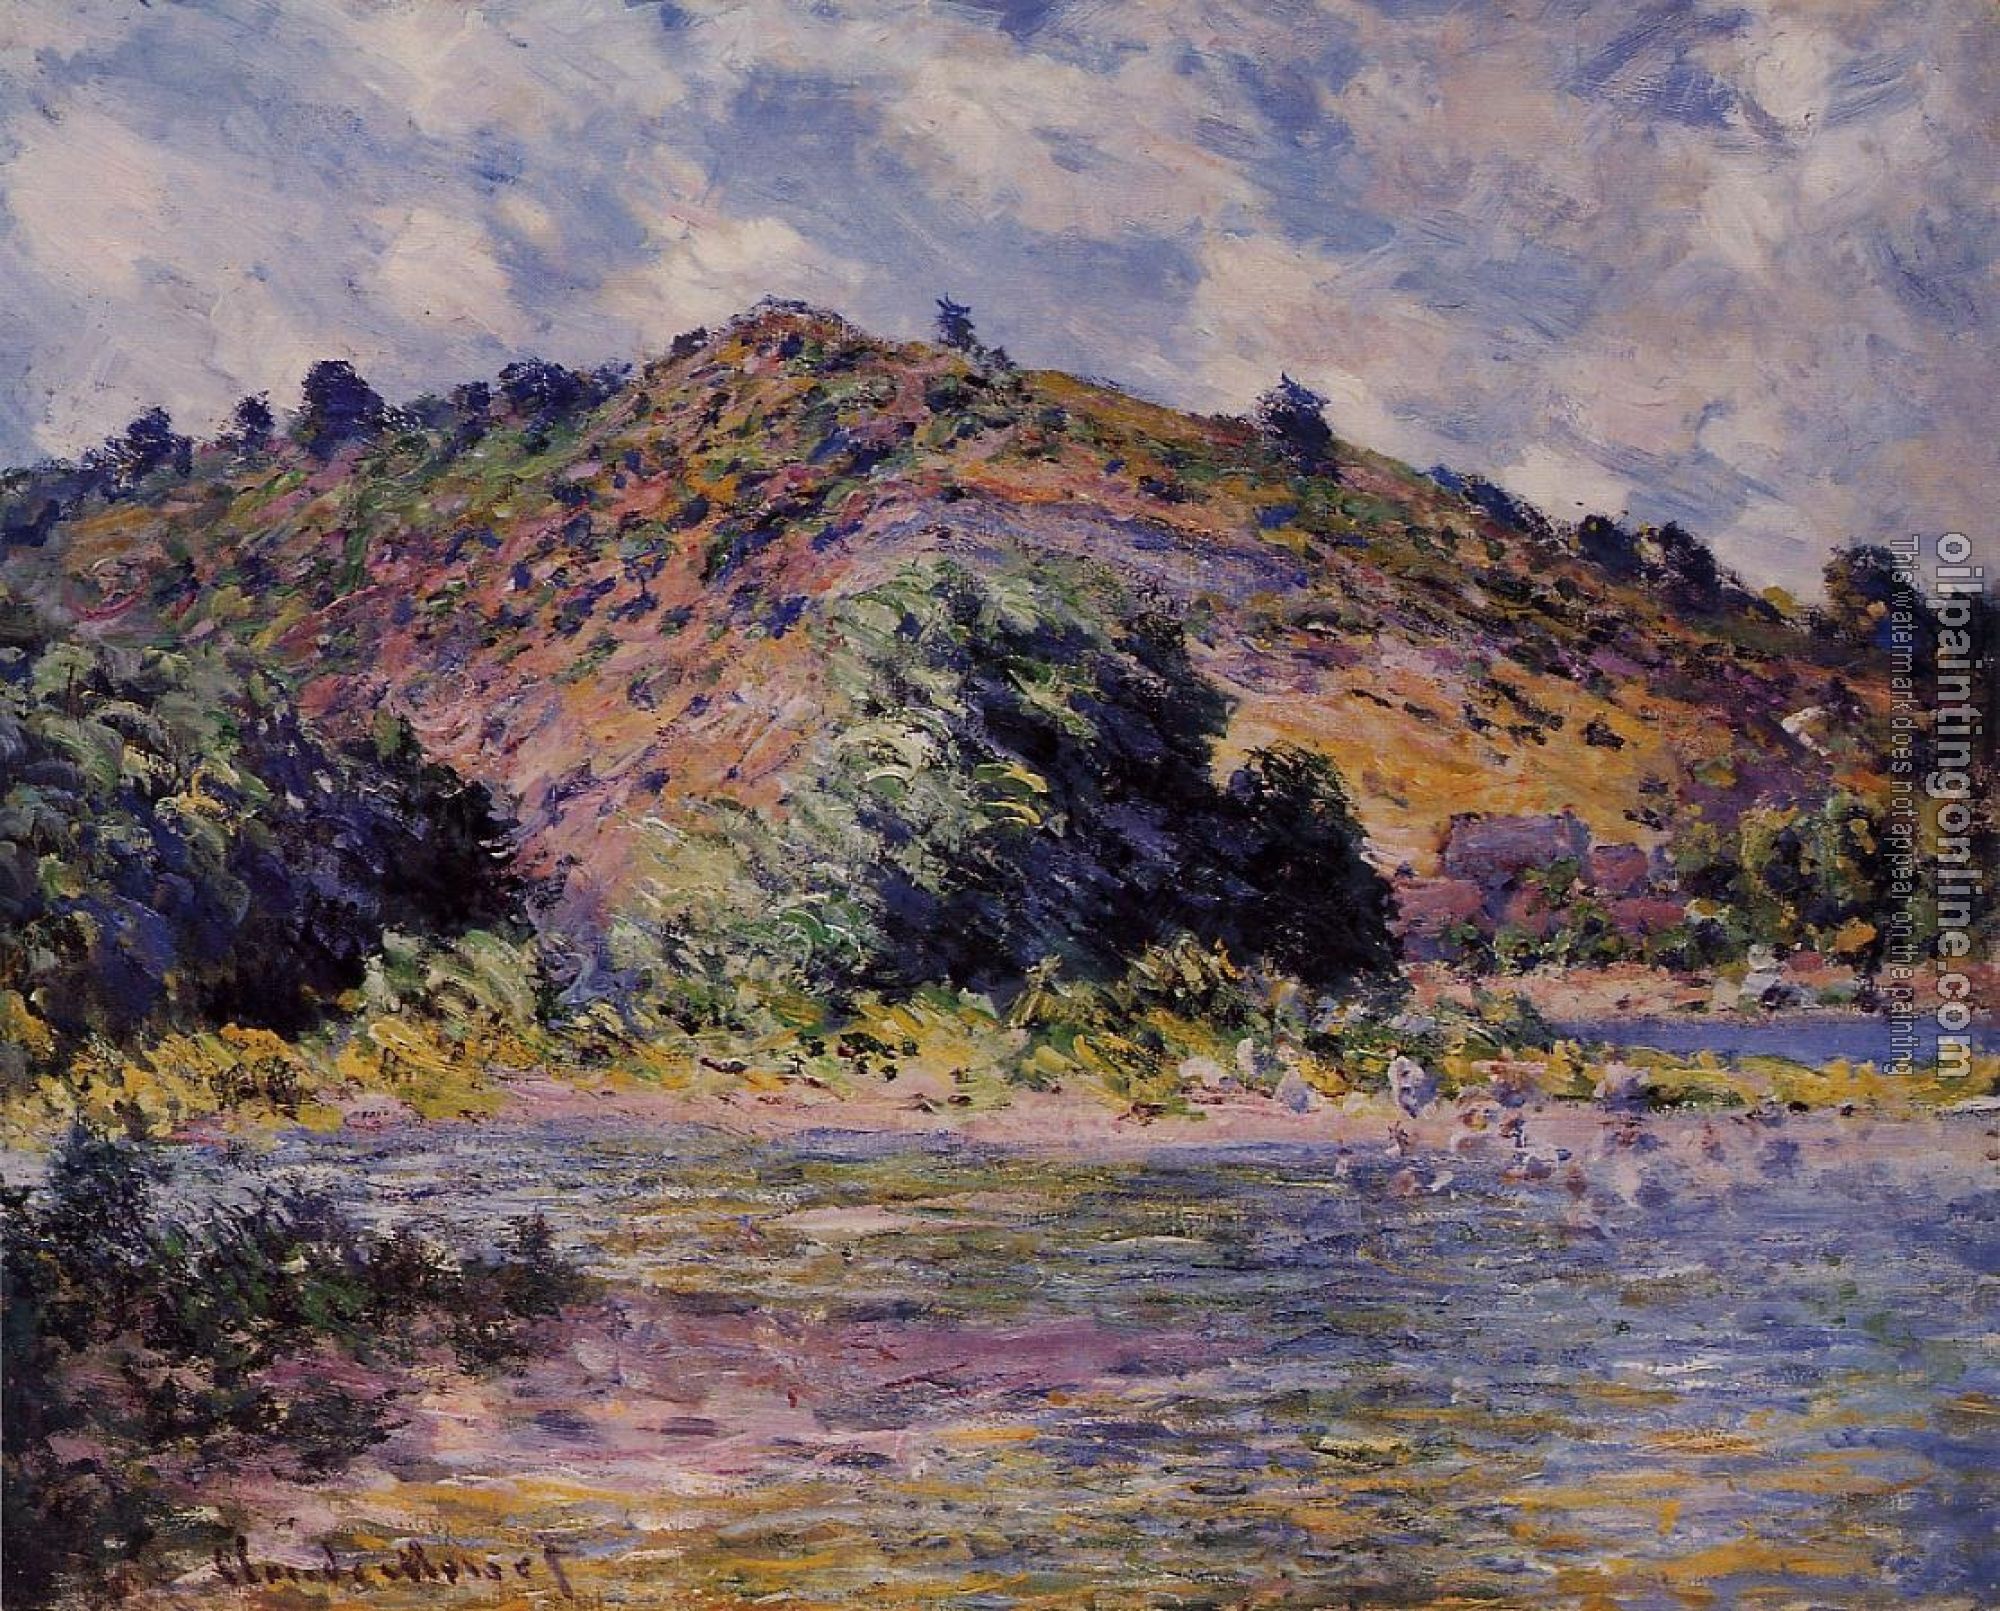 Monet, Claude Oscar - The Banks of the Seine at Port-Villez